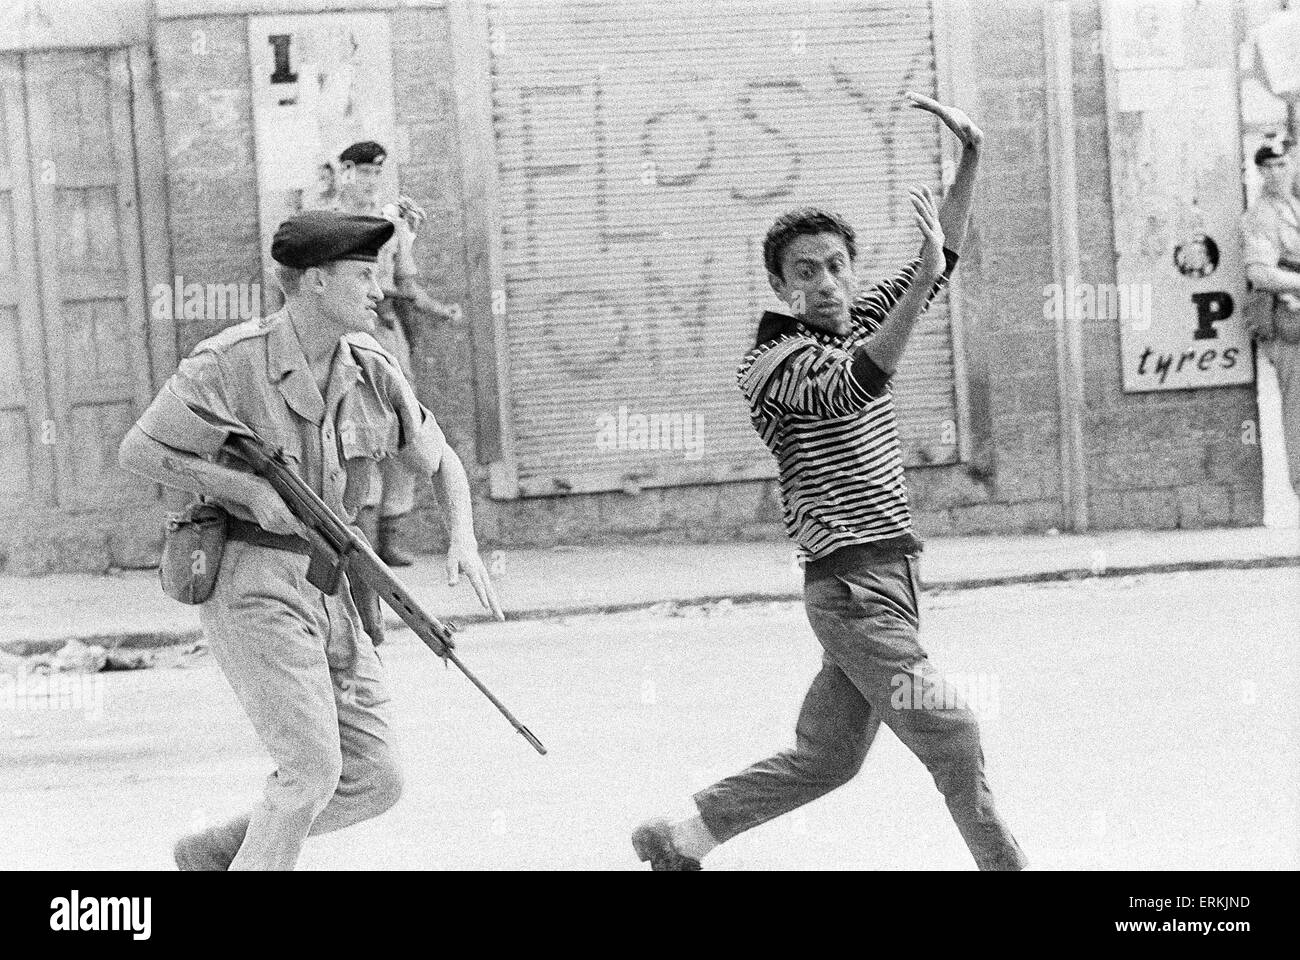 Britische Truppen in höchster Alarmbereitschaft kam wie sie die Straßen in Aden patrouillieren, auf der Suche nach nationalistischen Bedrohungen gegen kürzlich drei Mann un-Mission, Aden, Yemen, Sonntag, 2. April 1967. Stockfoto